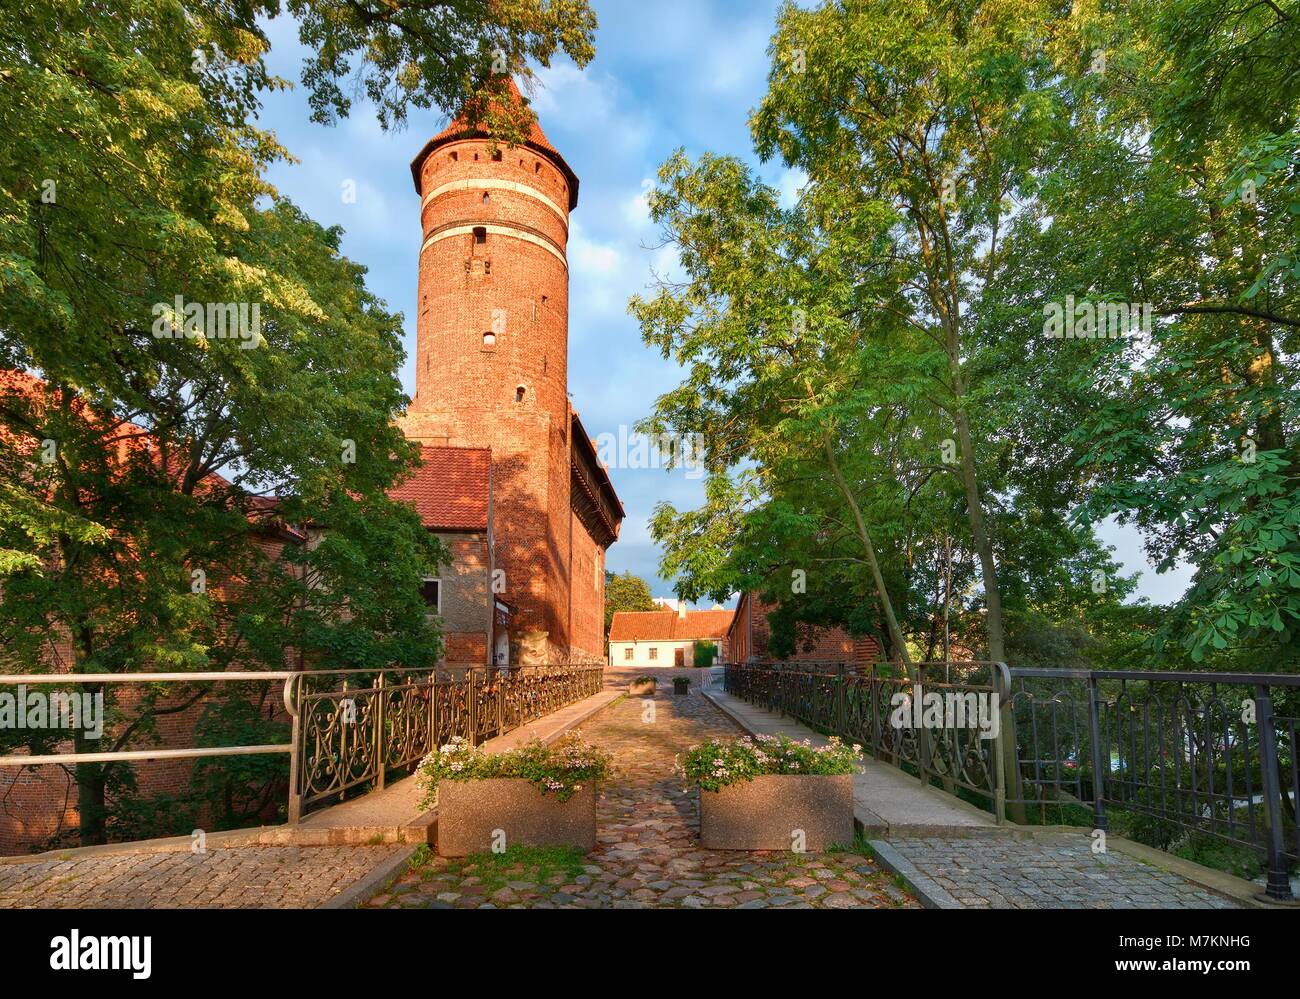 Brücke mit Liebe Vorhängeschlösser über Fluss Lyna, gotische Burg des Fürstbistums Ermland im Hintergrund, Olsztyn, Polen Stockfoto